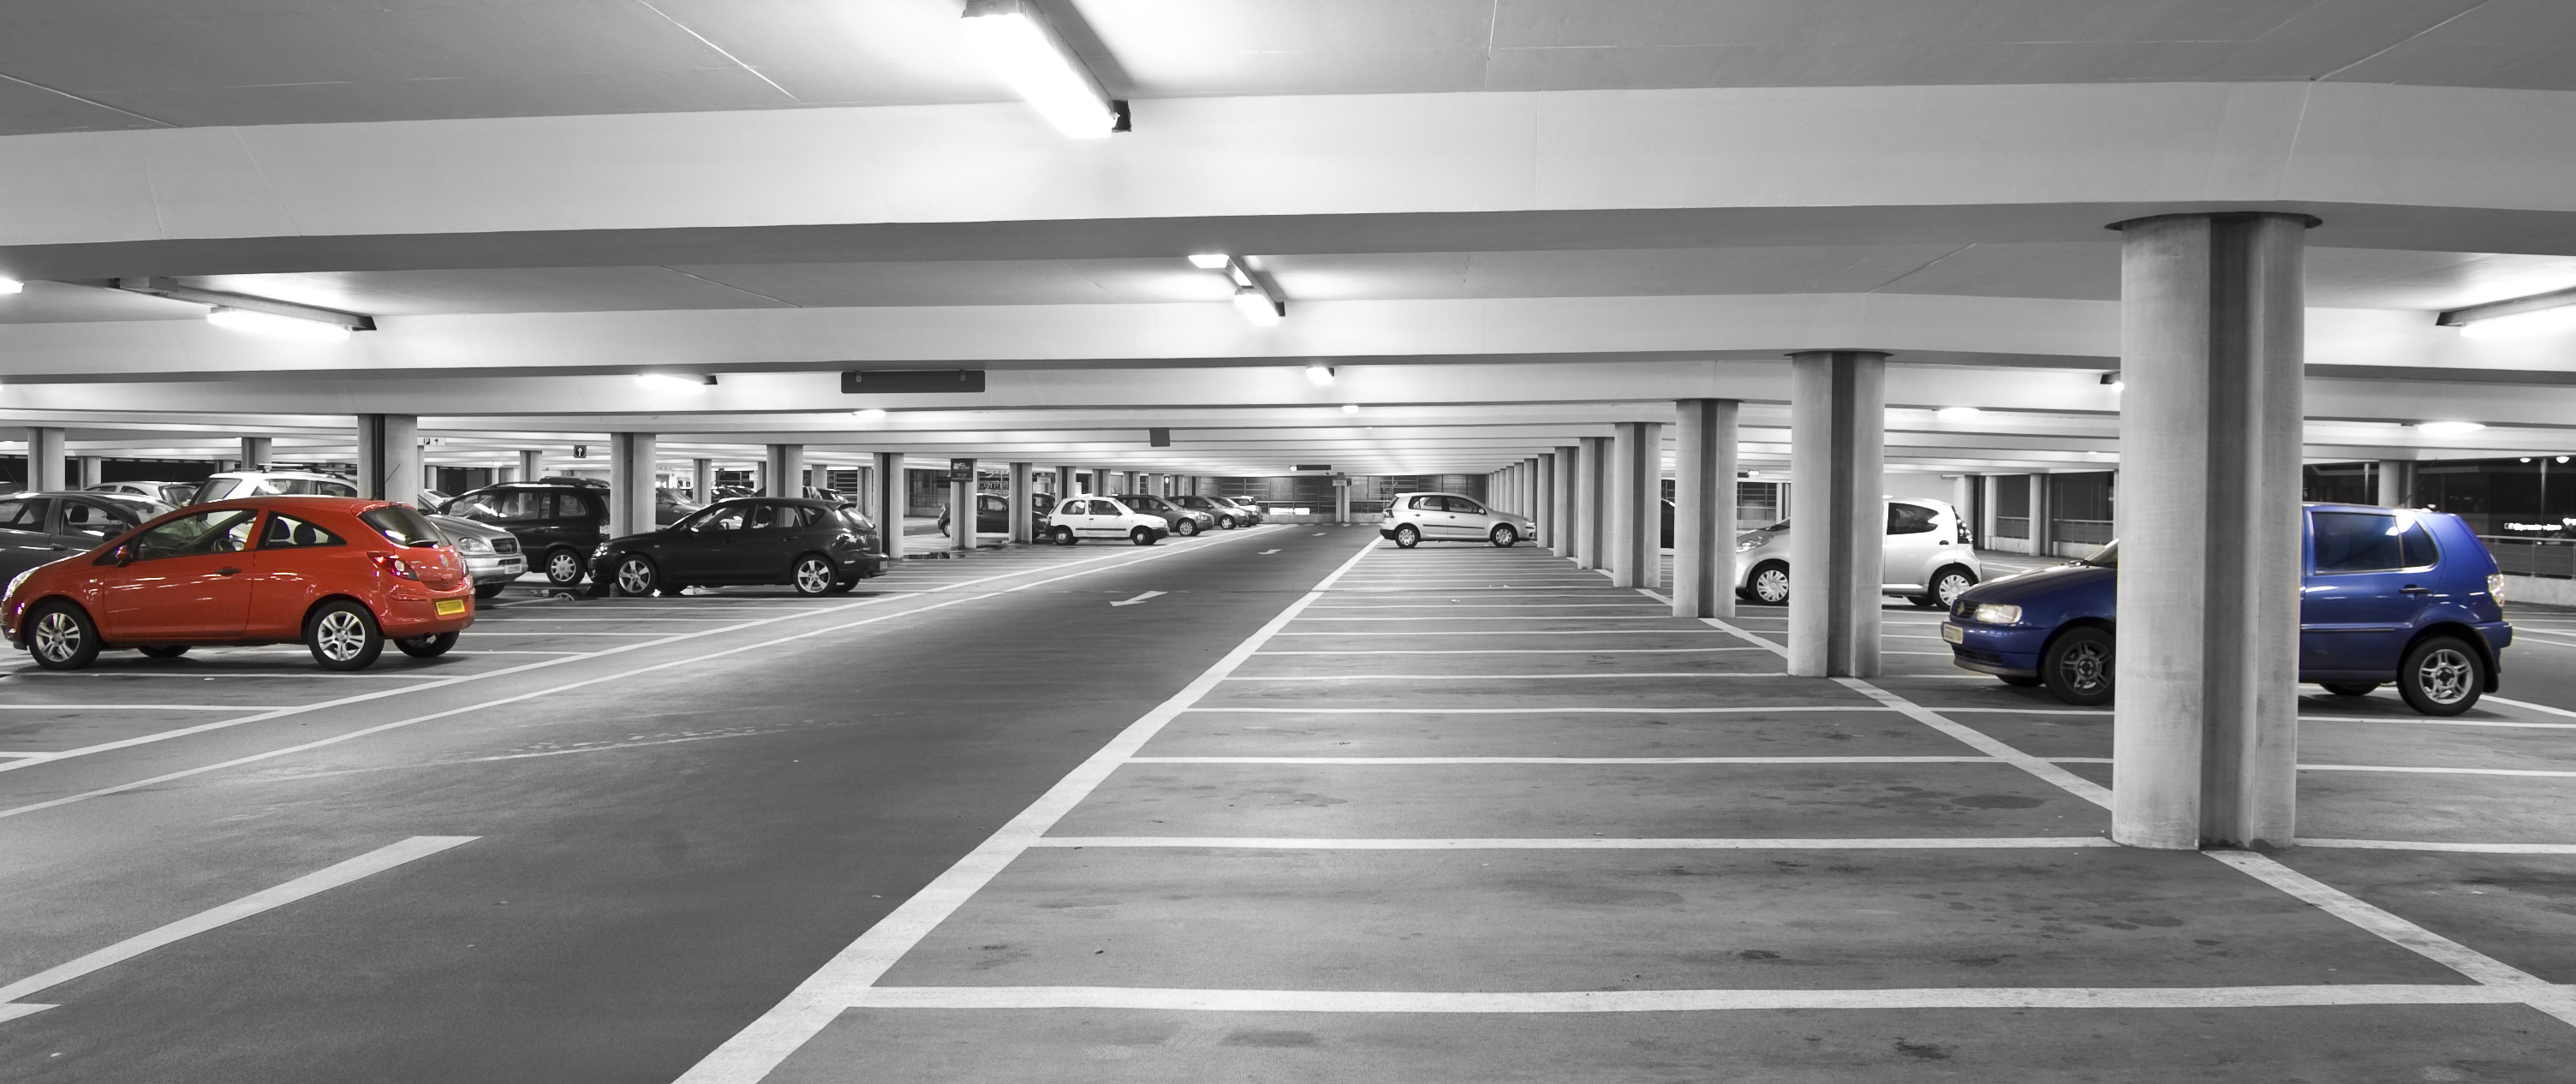 Машиноместо недвижимость. Паркинг. Подземная стоянка для автомобилей. Машина в паркинге. Красивый паркинг.